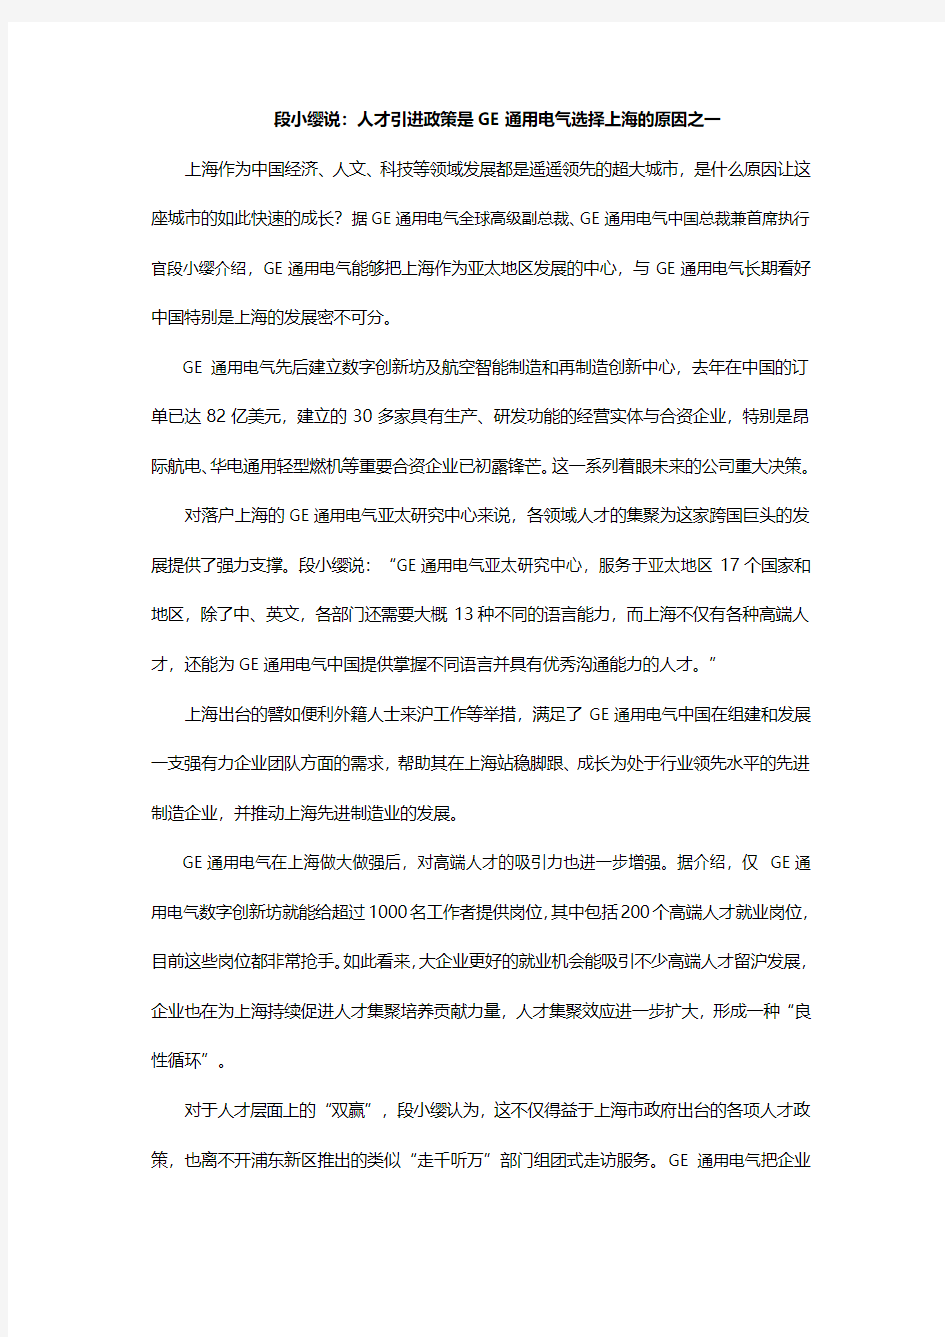 段小缨说：人才引进政策是GE通用电气选择上海的原因之一